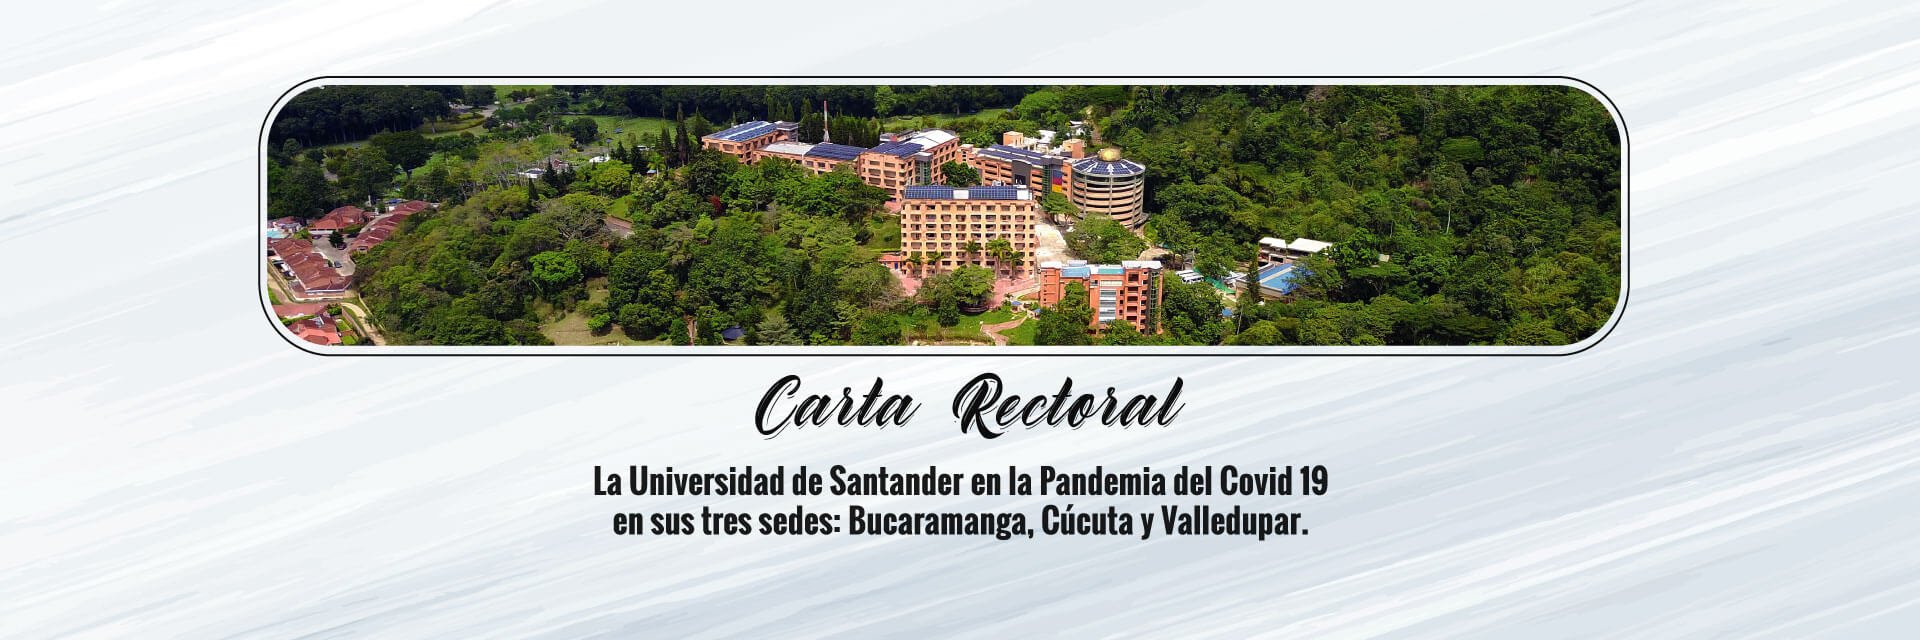 La Universidad de Santander en la pandemia del Covid-19 en sus tres sedes: Bucaramanga, Cúcuta y Valledupar